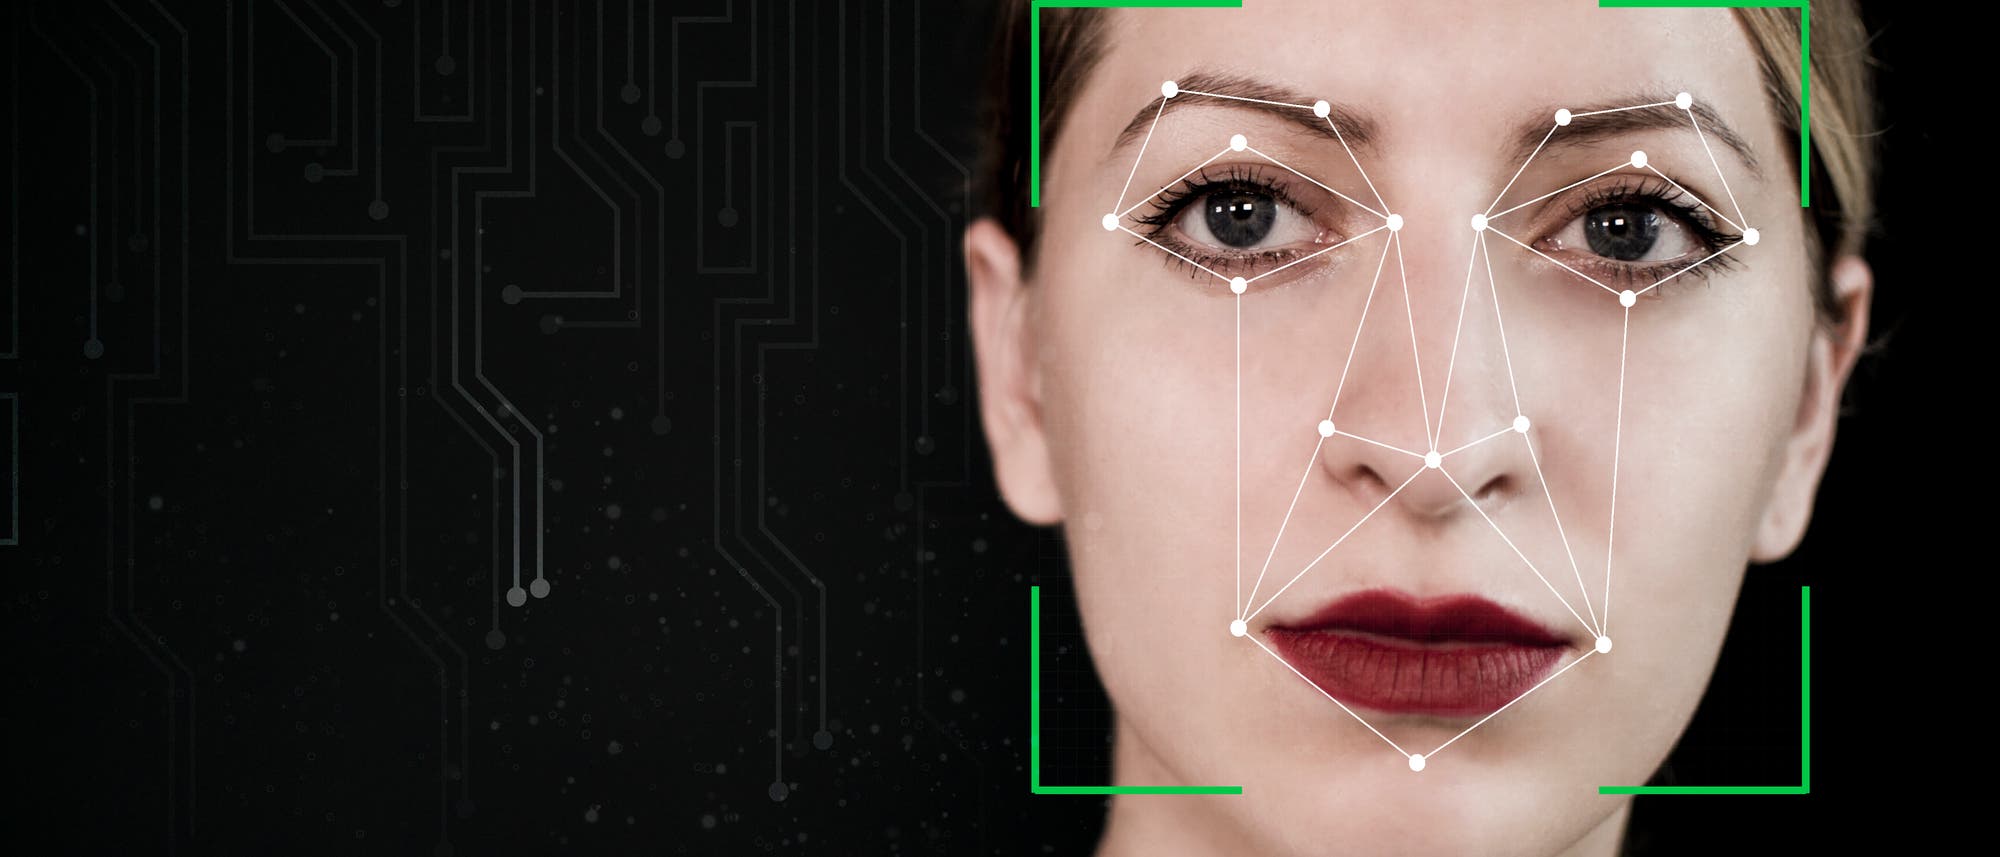 Frau: Biometrische Gesichtserkennung